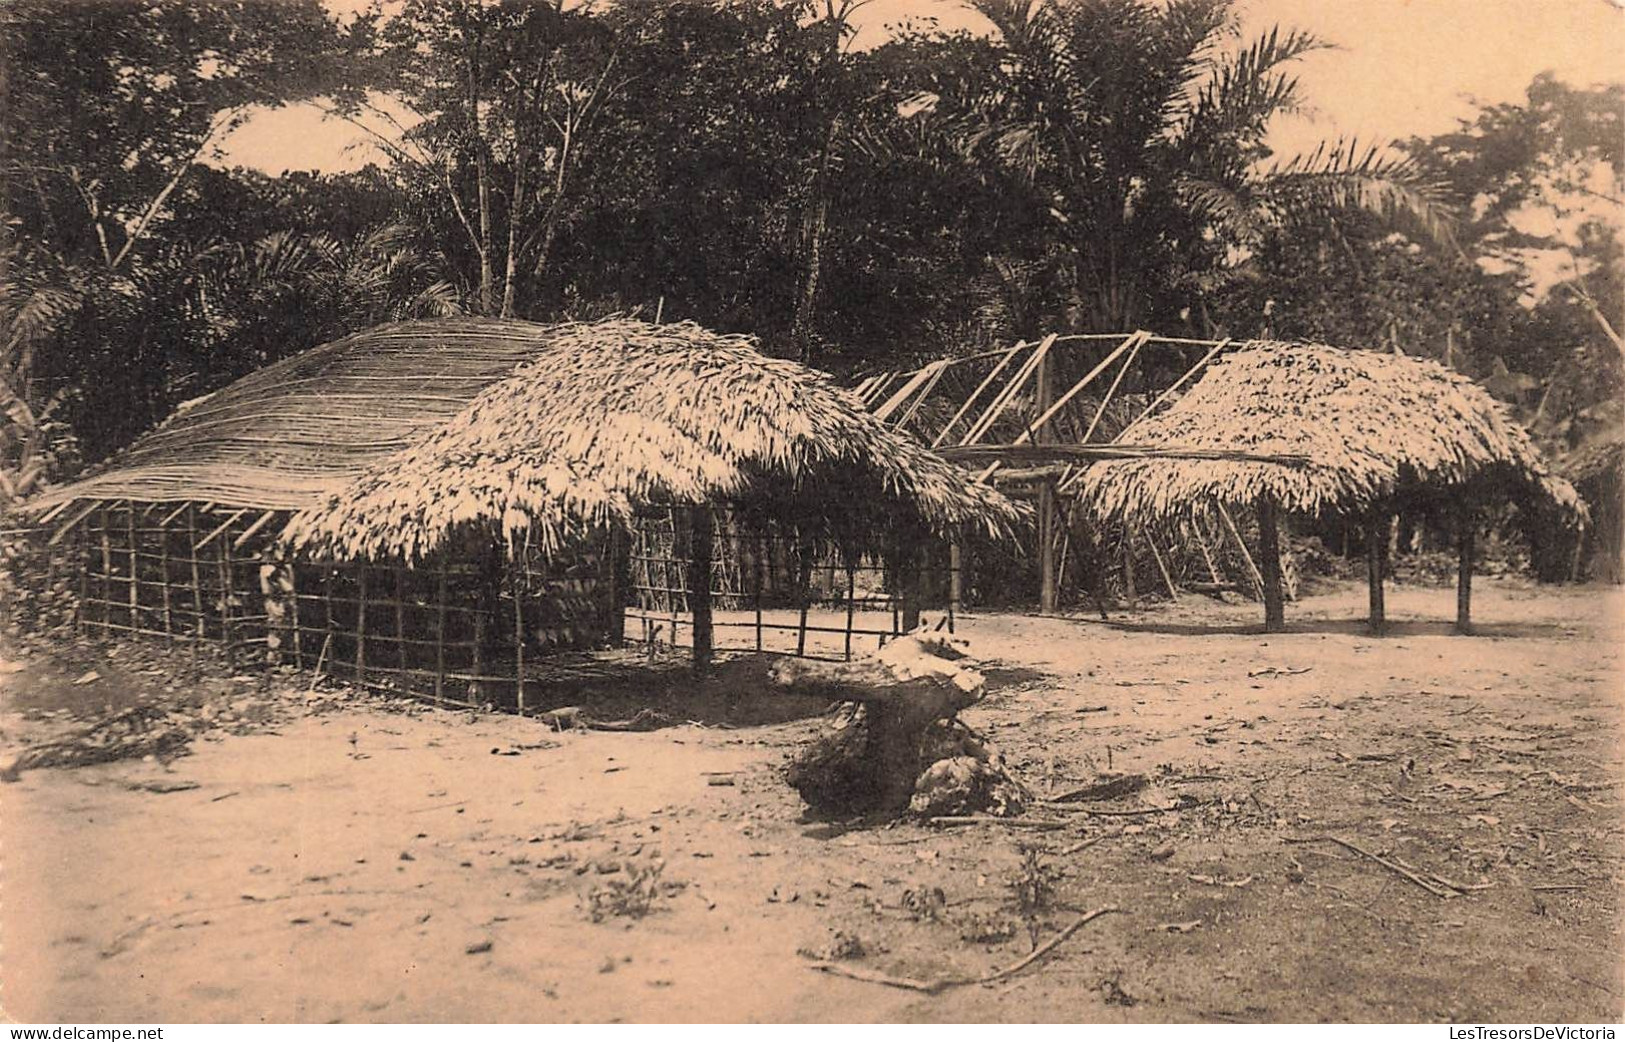 CONGO - Huttes Batitu En Construction - Document Musée Congo - Photo Expédition Maes - Carte Postale Ancienne - Sonstige & Ohne Zuordnung